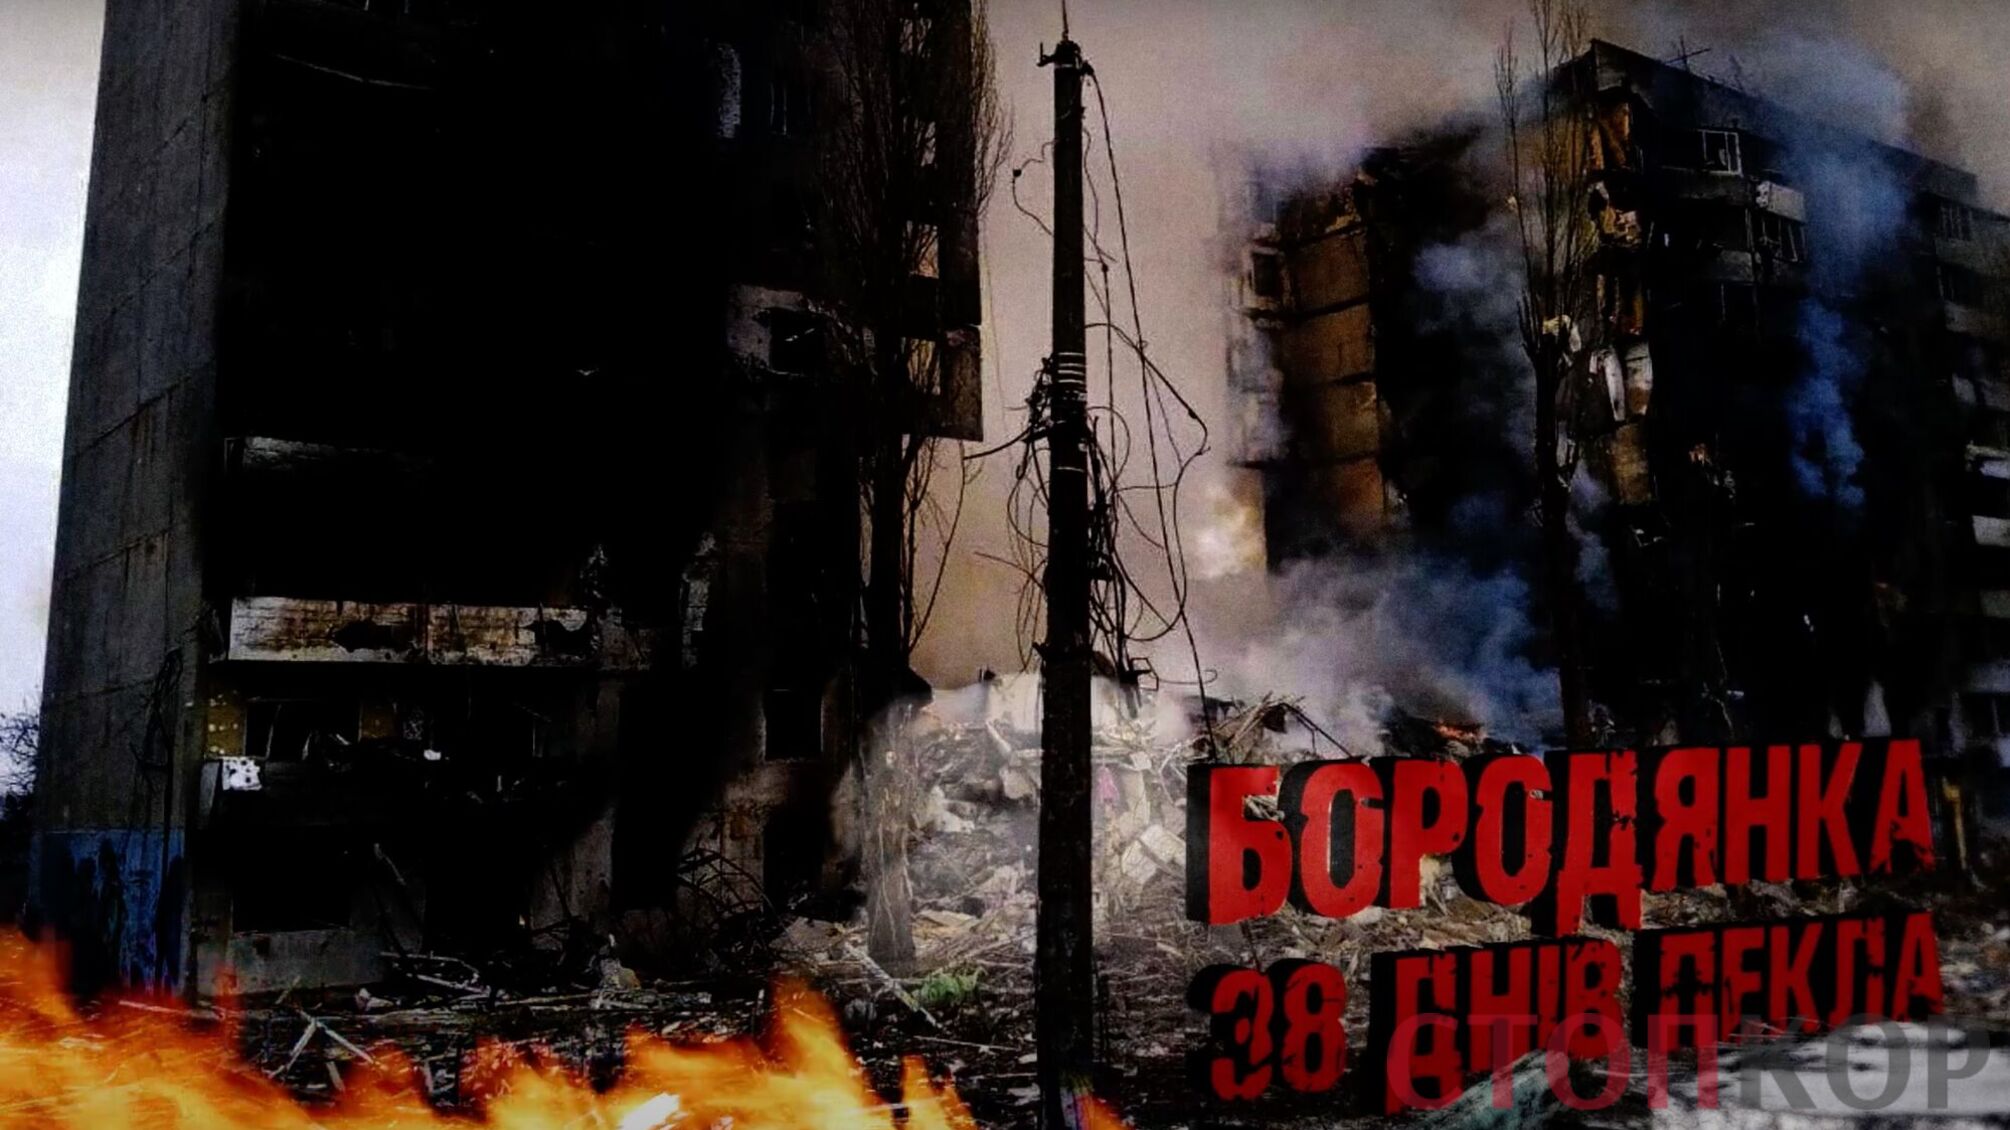 38 дней ада: как выглядит Бородянка после ужасов 'русского мира'